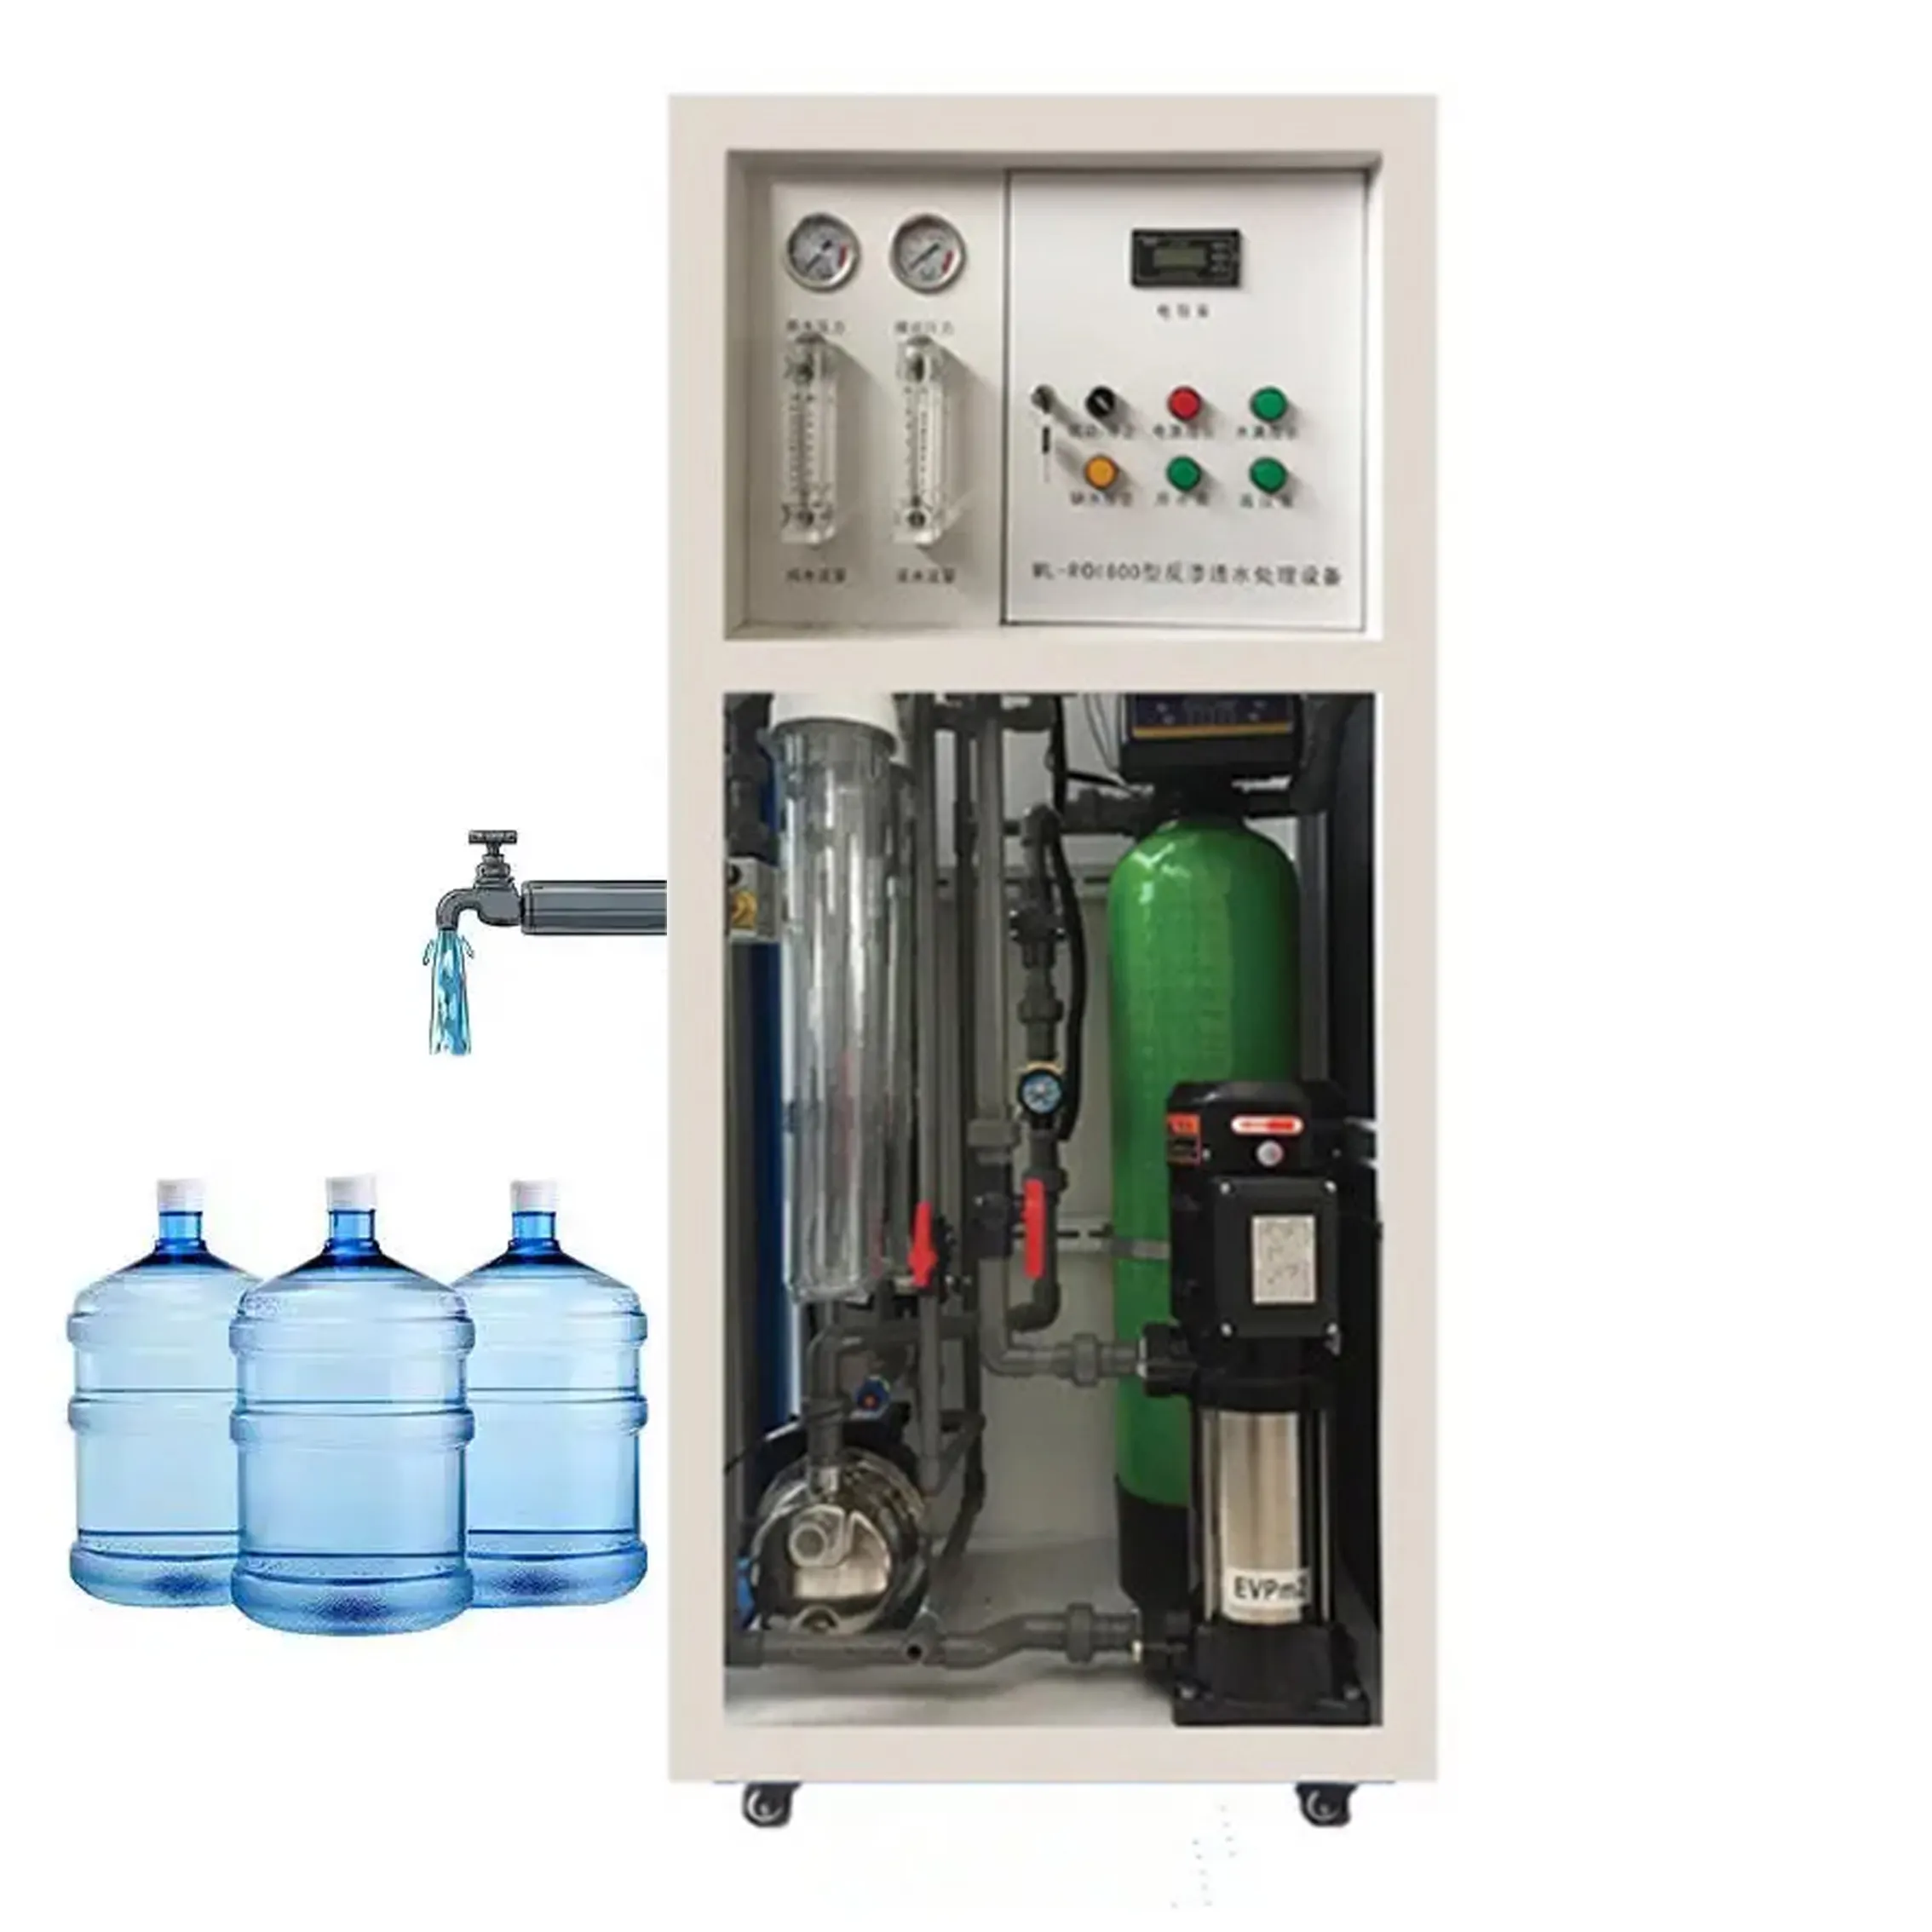 Depuratore d'acqua commerciale osmosi inversa 250LPH 500LPH macchinari per il trattamento delle acque industriali osmoseur RO system